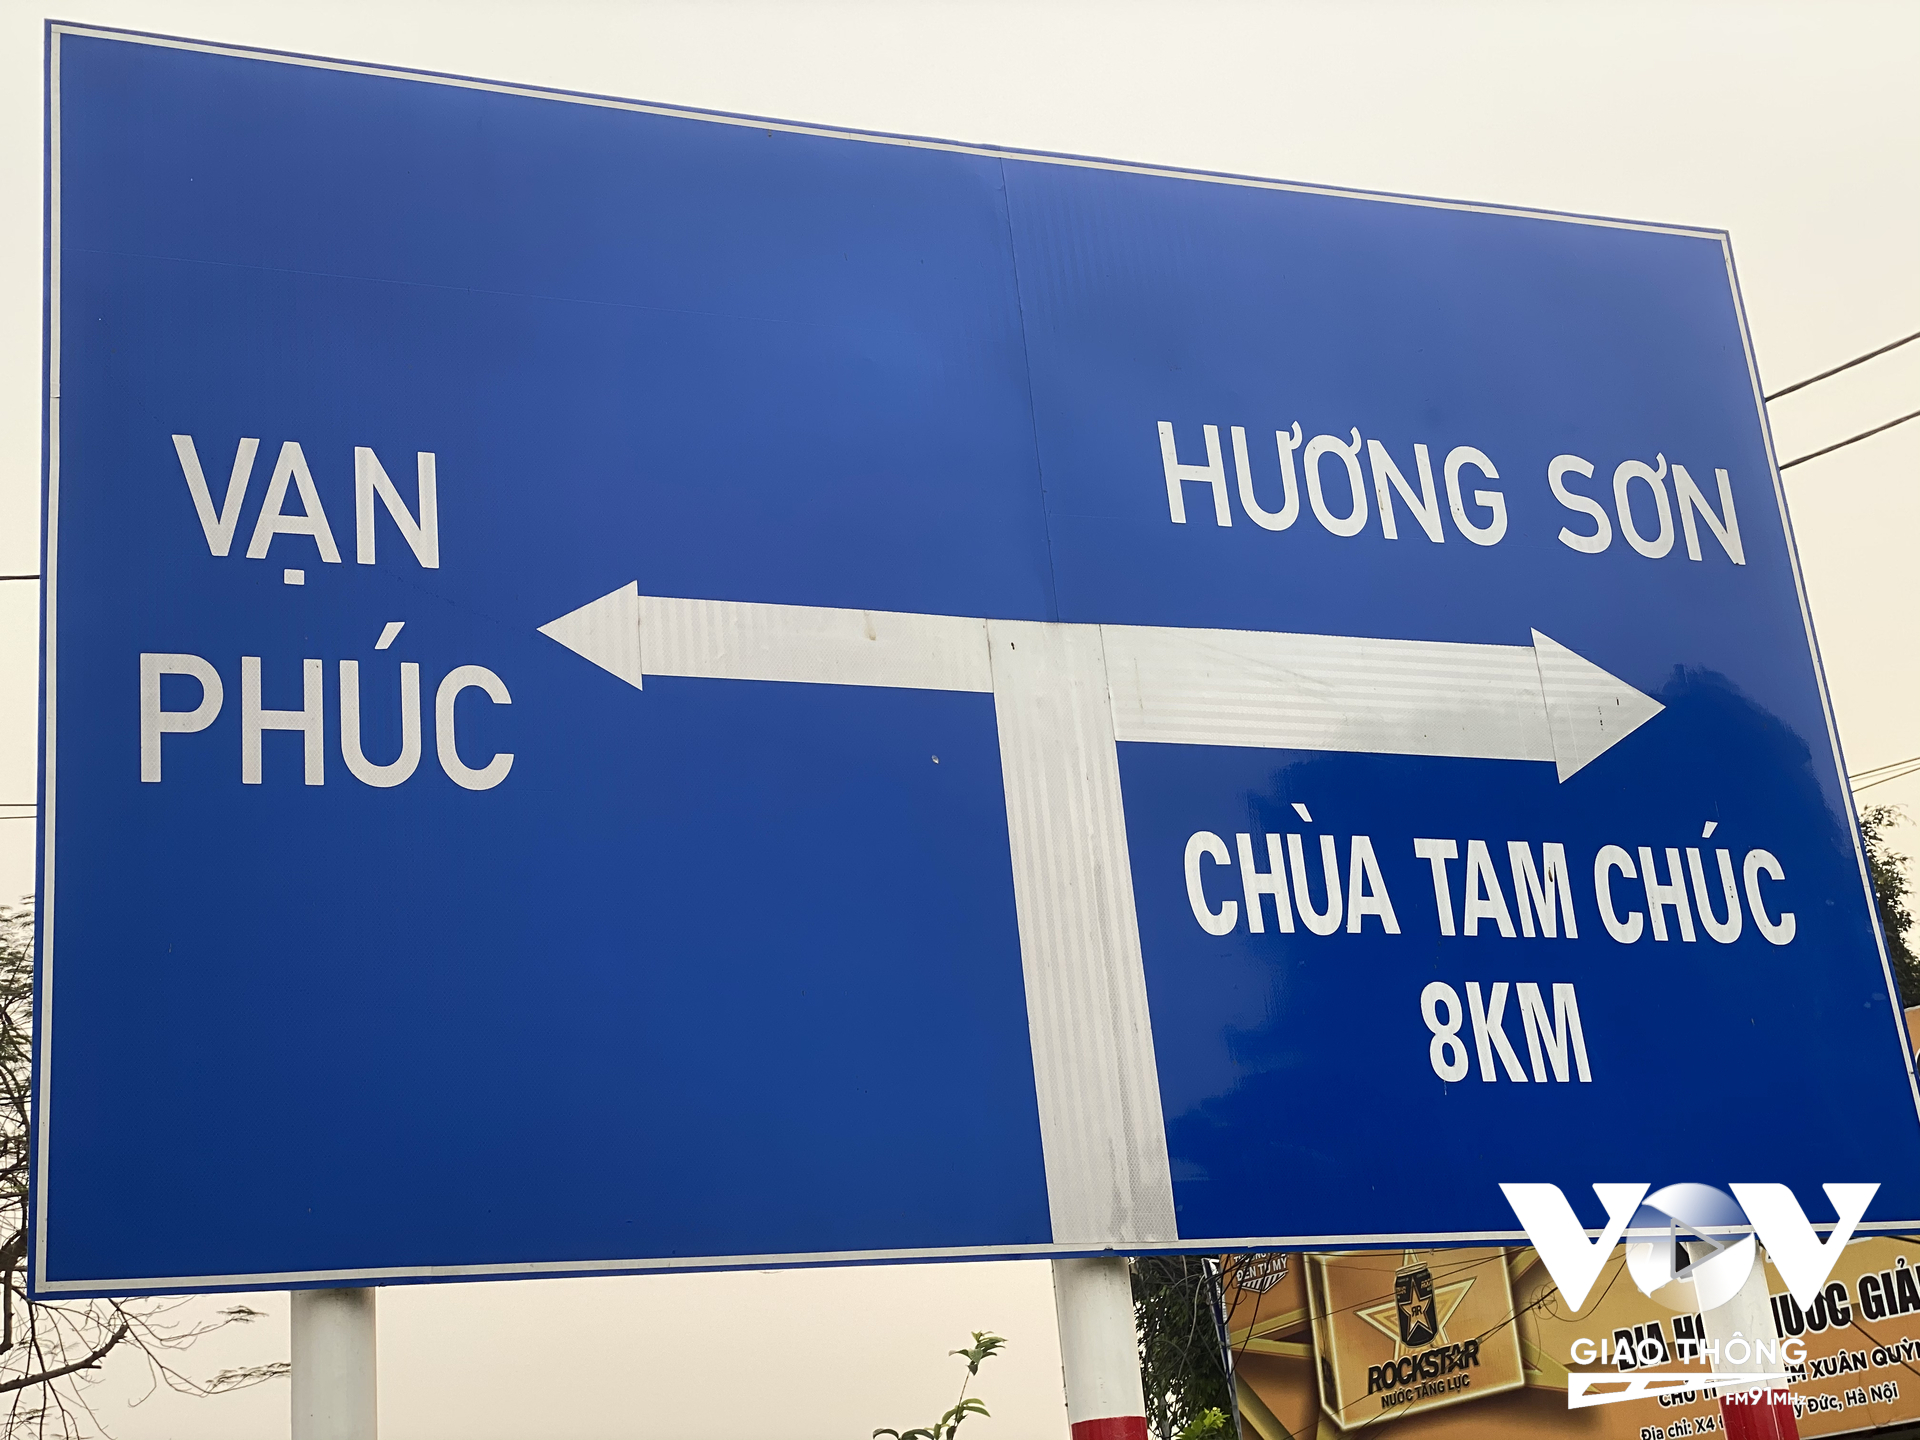 Biển báo giao thông tại đường tỉnh 419 (ĐT 419) đoạn qua xóm 4, xã Đốc Tín (cách Trạm bơm Đốc Tín khoảng 200m) đã bị ngang nhiên dán chữ 'Chùa Tam Chúc'.